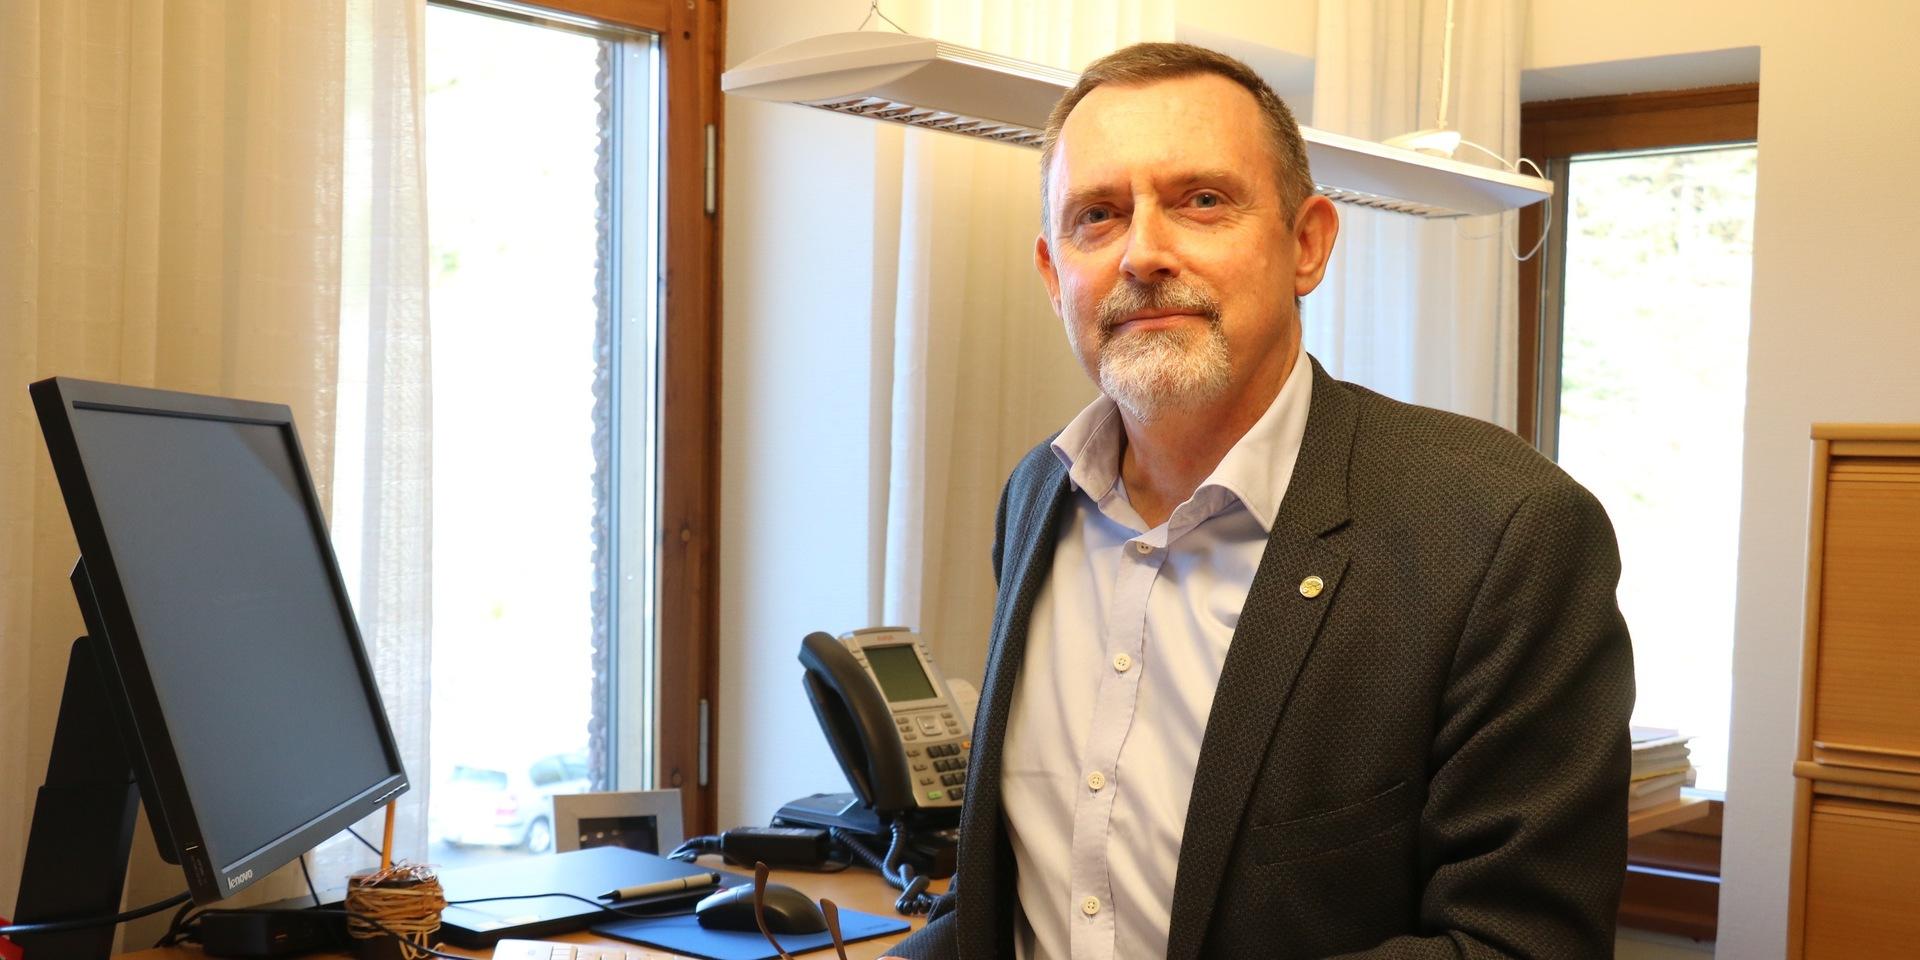 – Var kritisk när någon uppmanar dig till handlingar över telefon, säger Orusts Sparbanks VD Mikael Gustafsson. 